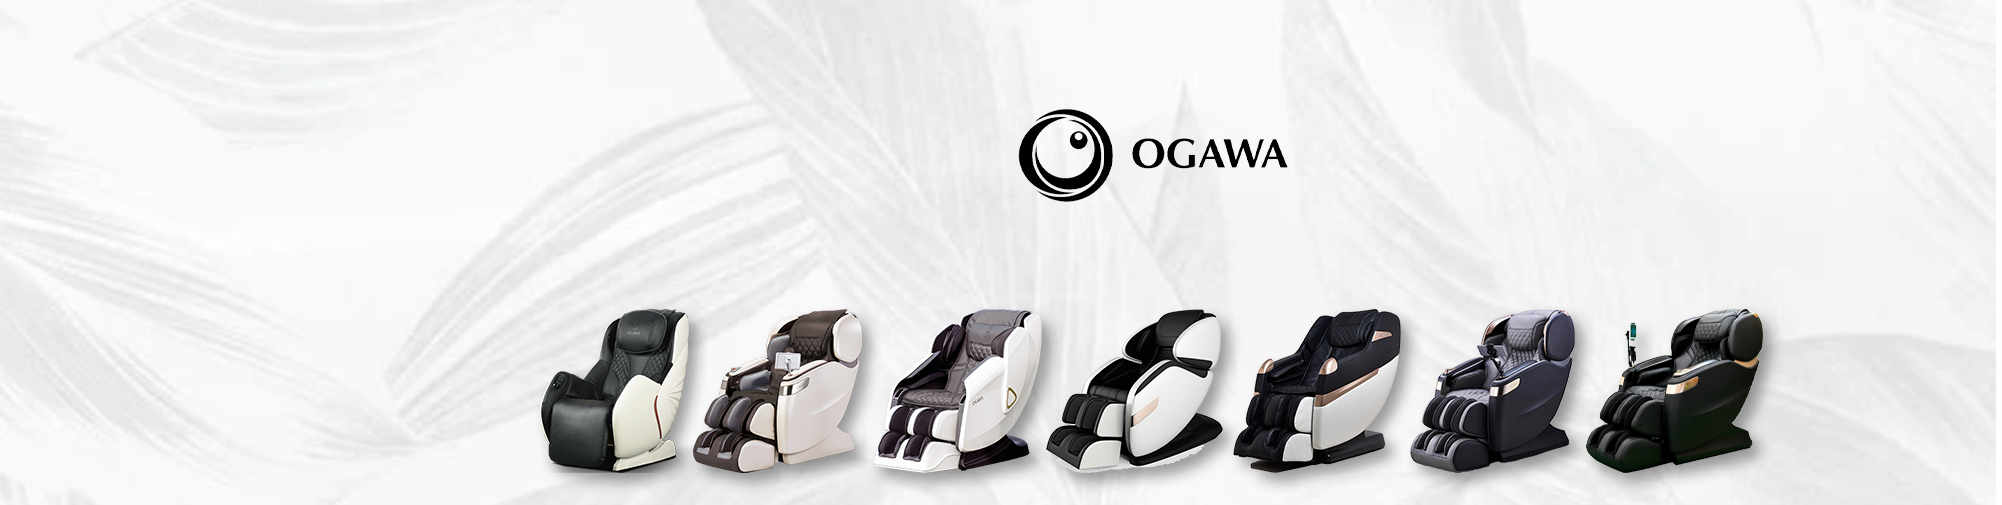 OGAWA | Masaj koltuğu dünyası